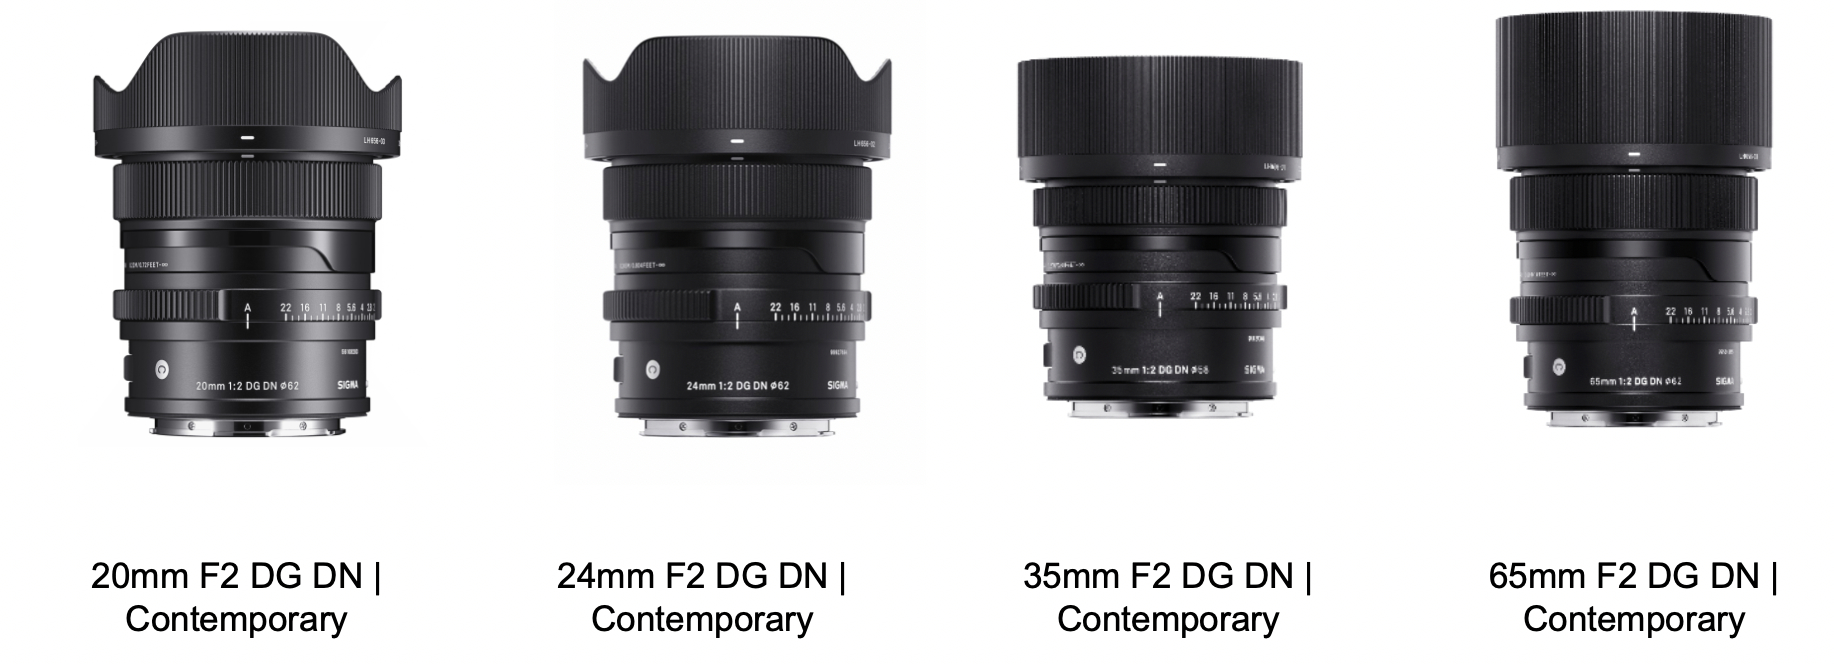 SIGMA 20mm F2 DG DN | Contemporary Prime Lens for Full Frame